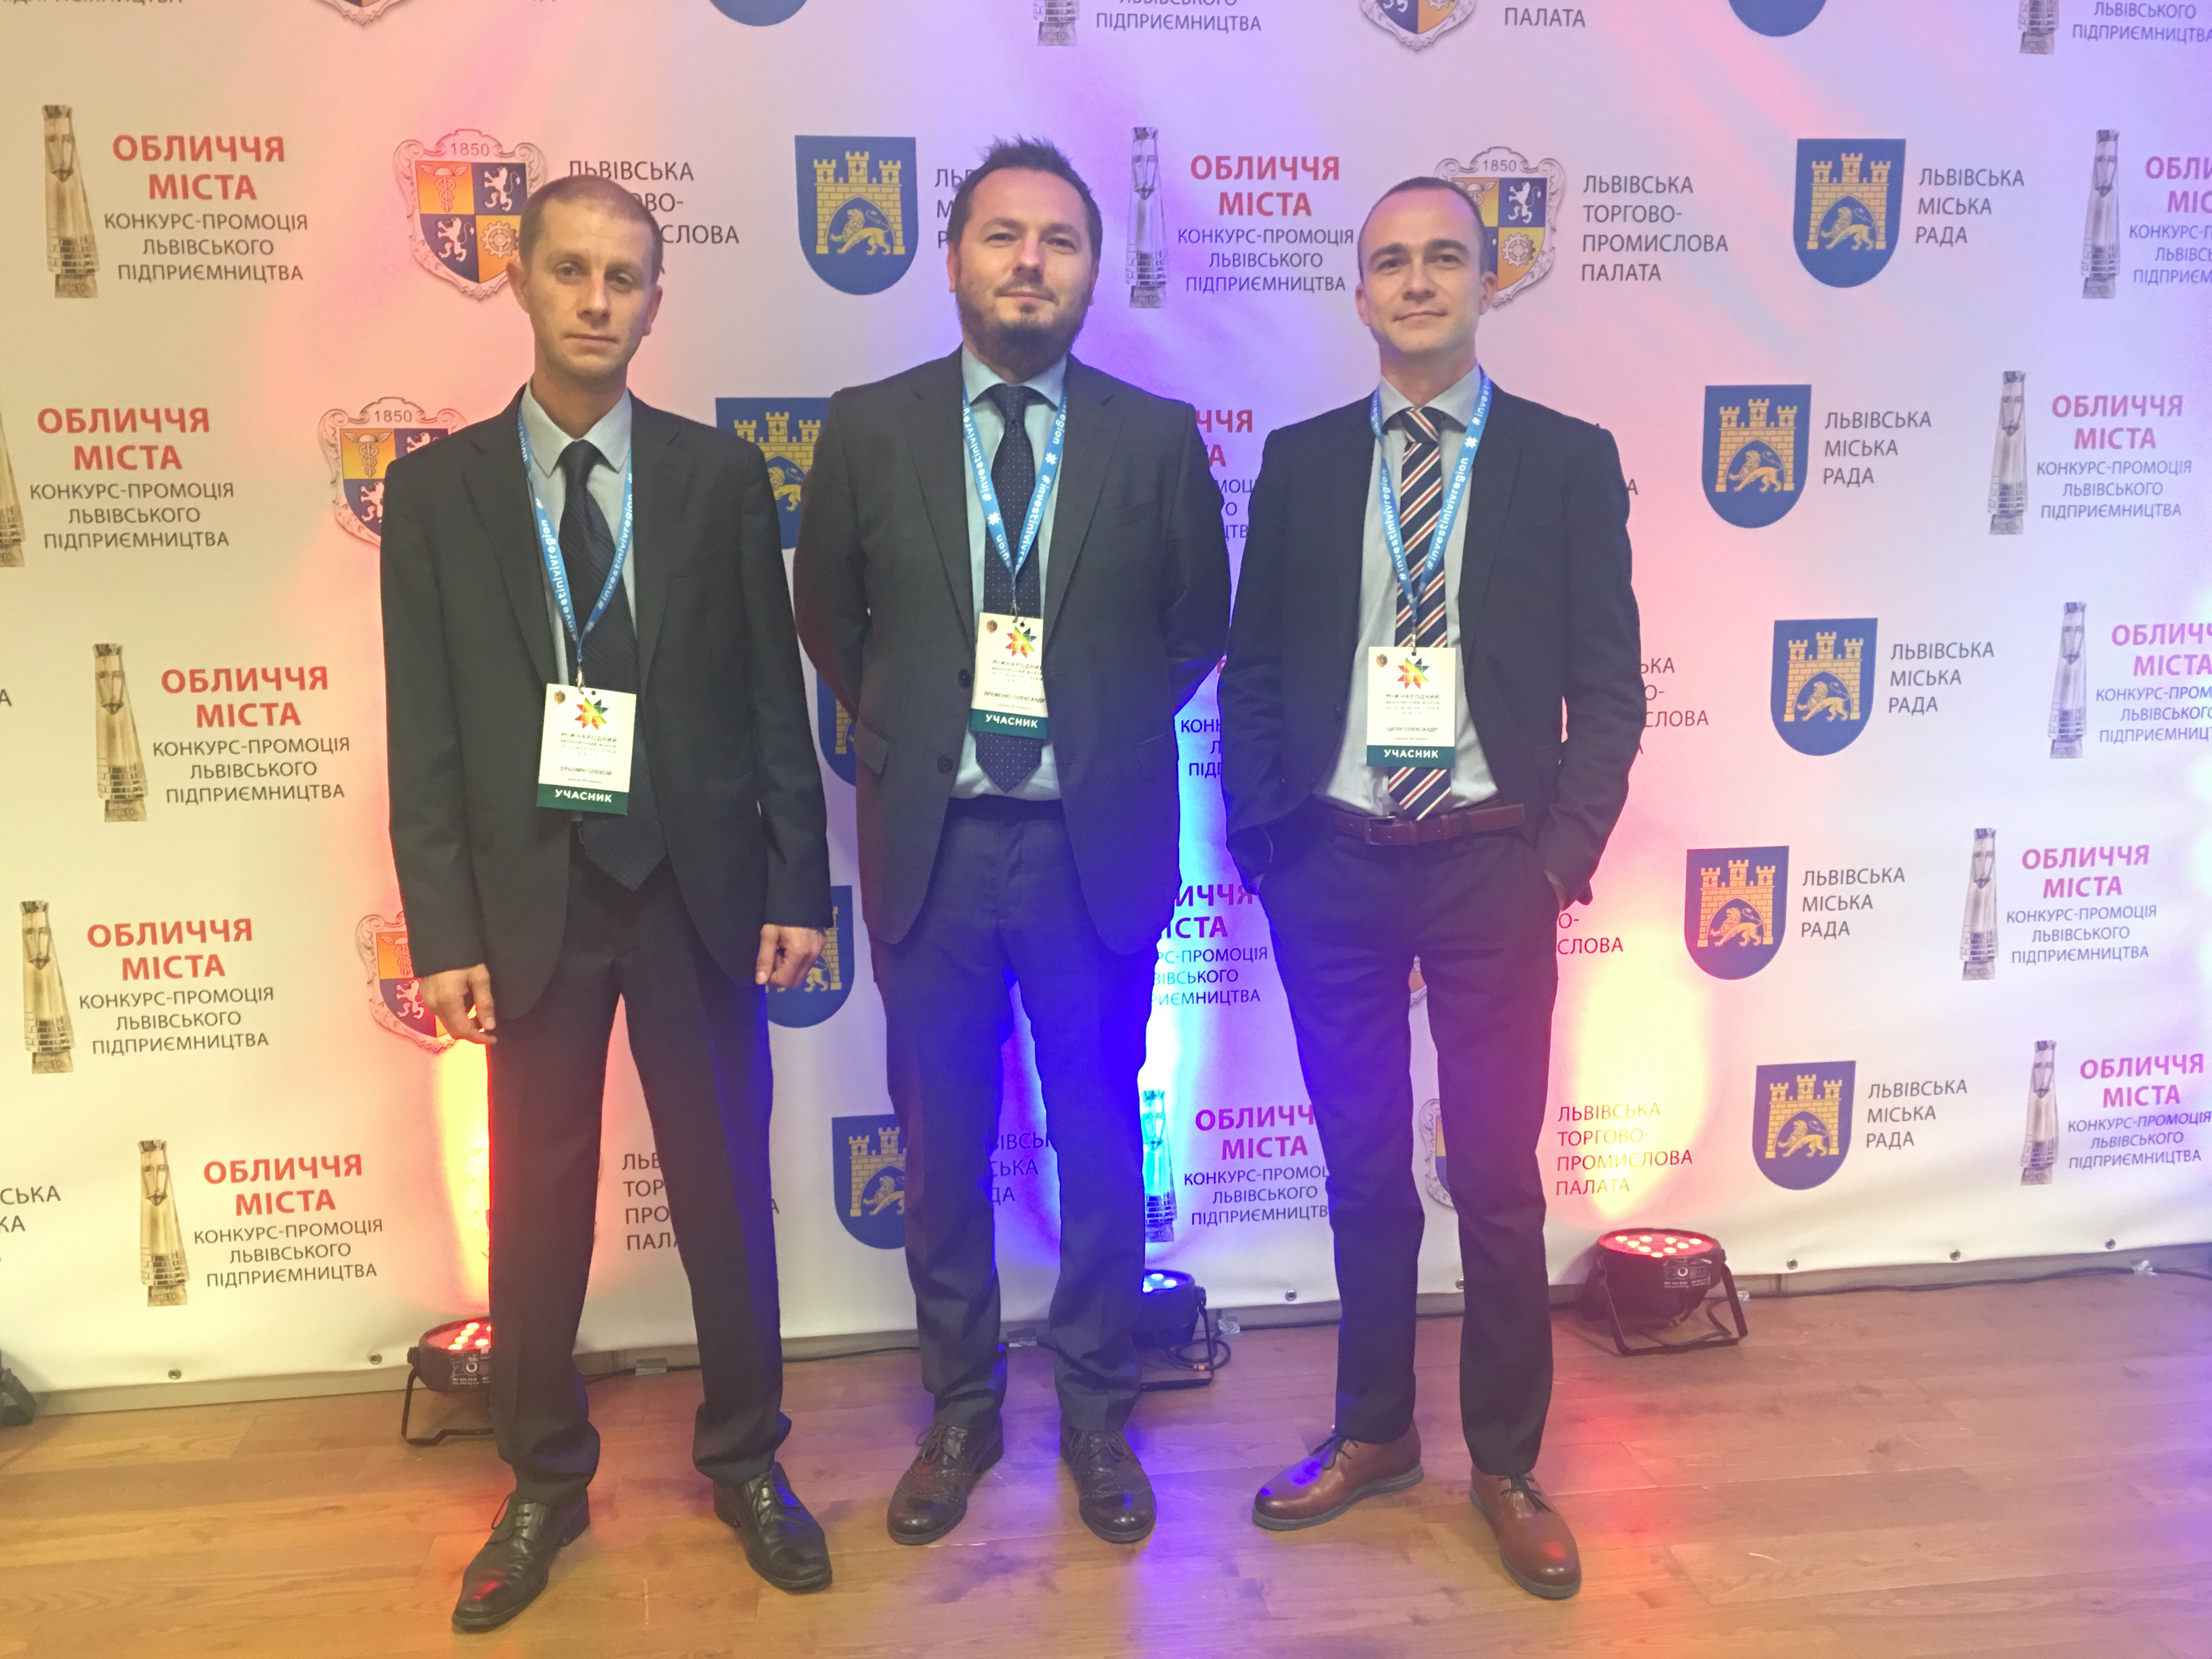 ПРЕС-РЕЛІЗ: SP Advisors відвідала XVII Міжнародний економічний форум у Львові